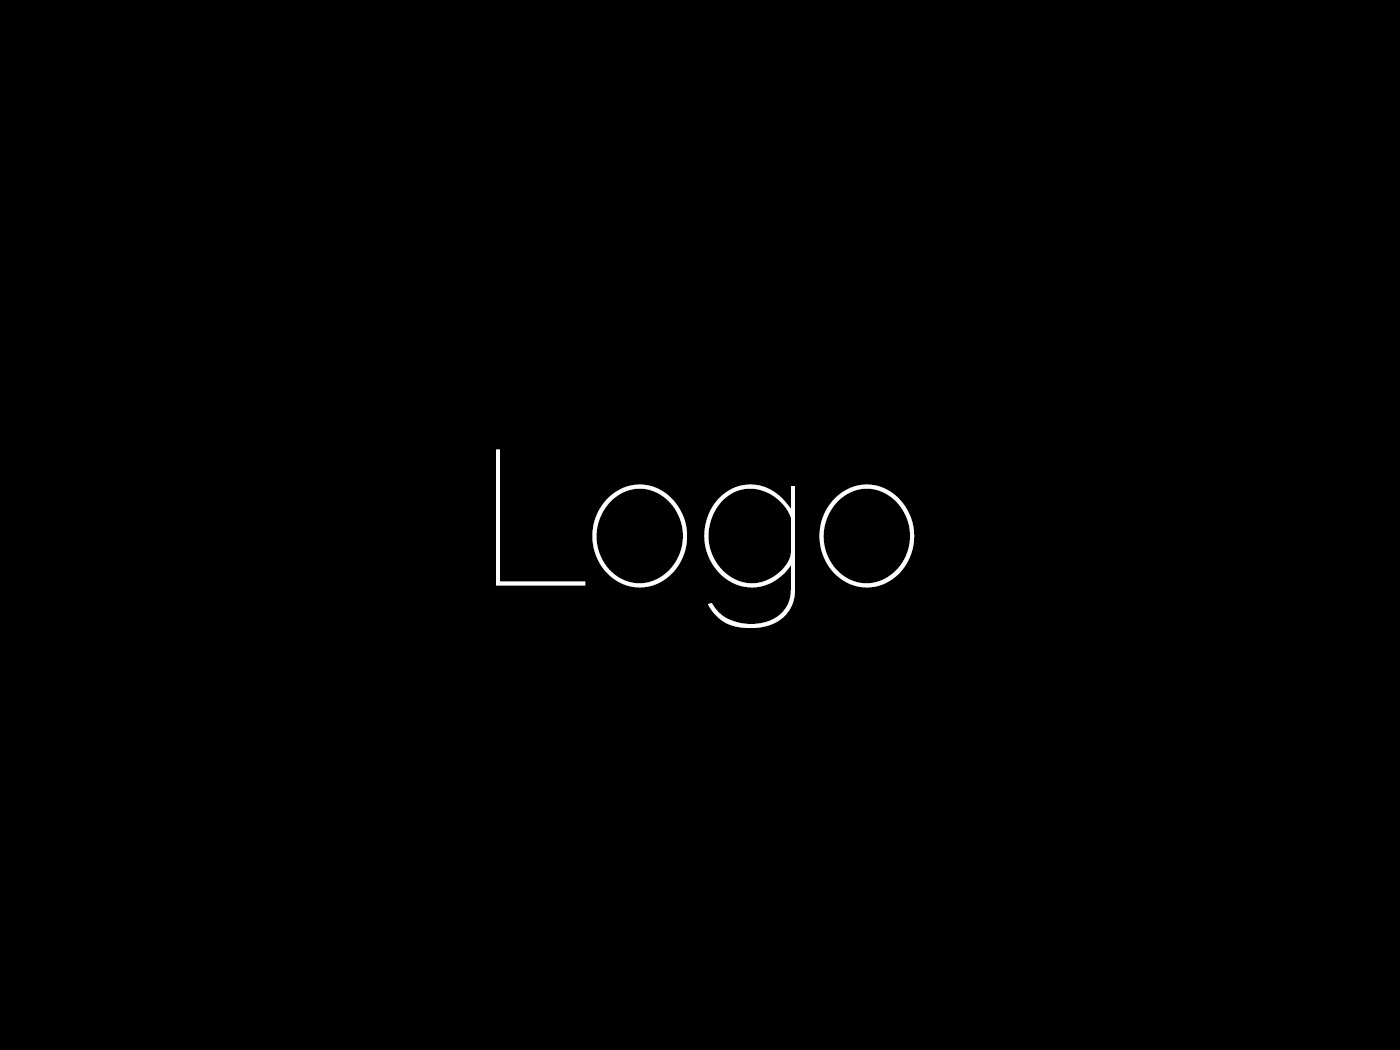 design designlogo Graphic Designer logo logo development logodesign графический дизайн дизайнерлоготипов дизайнлоготипа